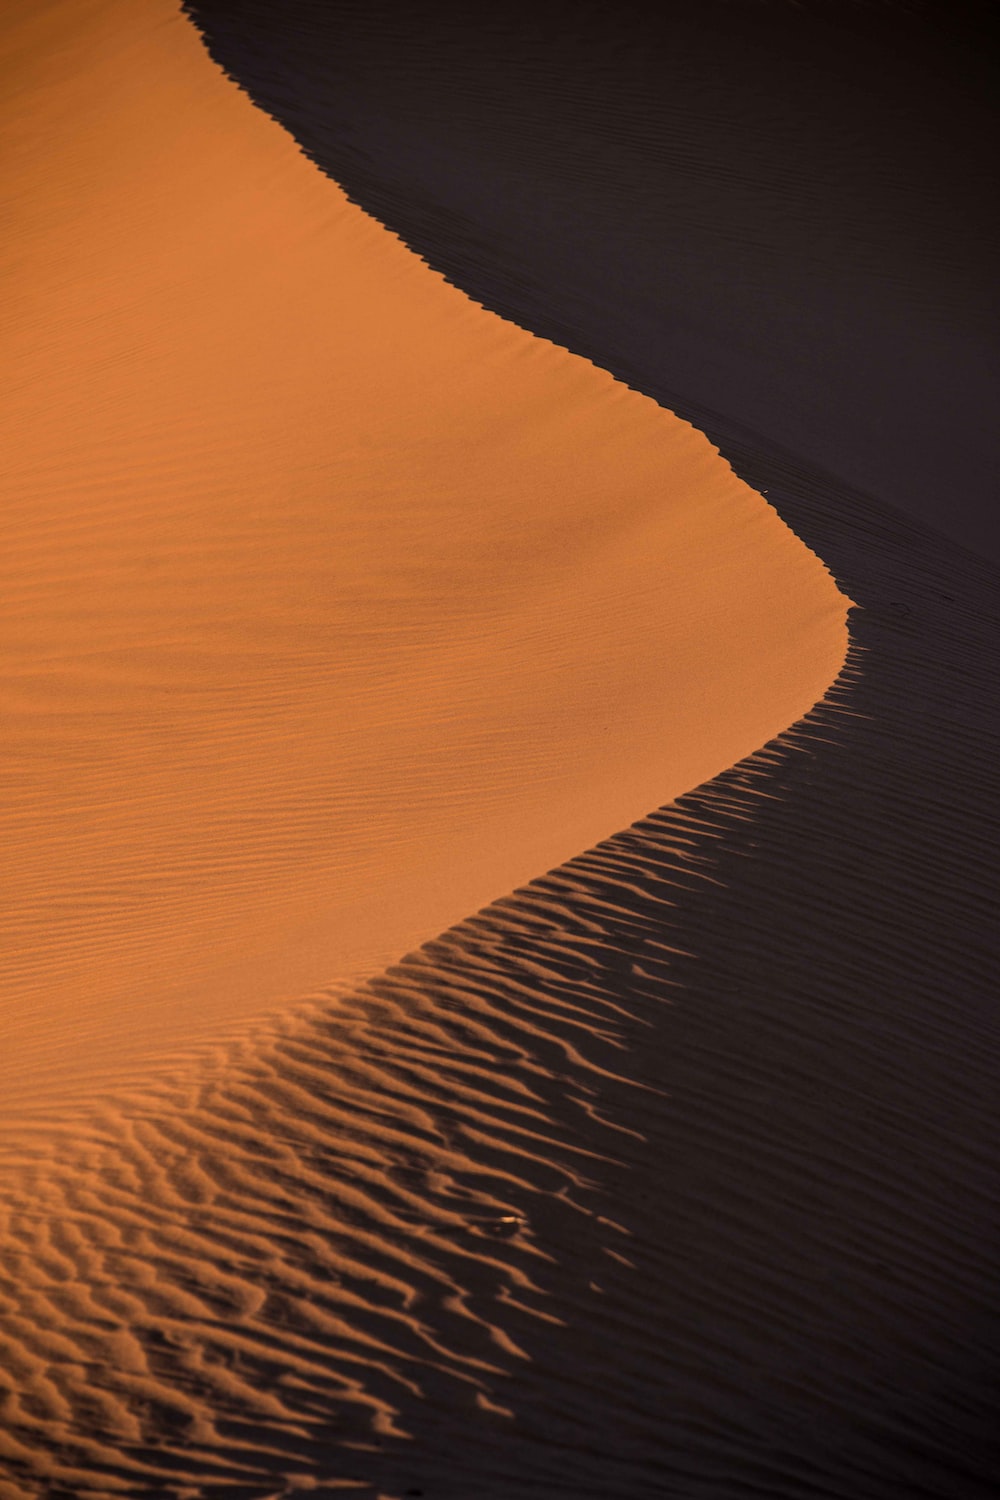 Sand Dunes Wallpapers